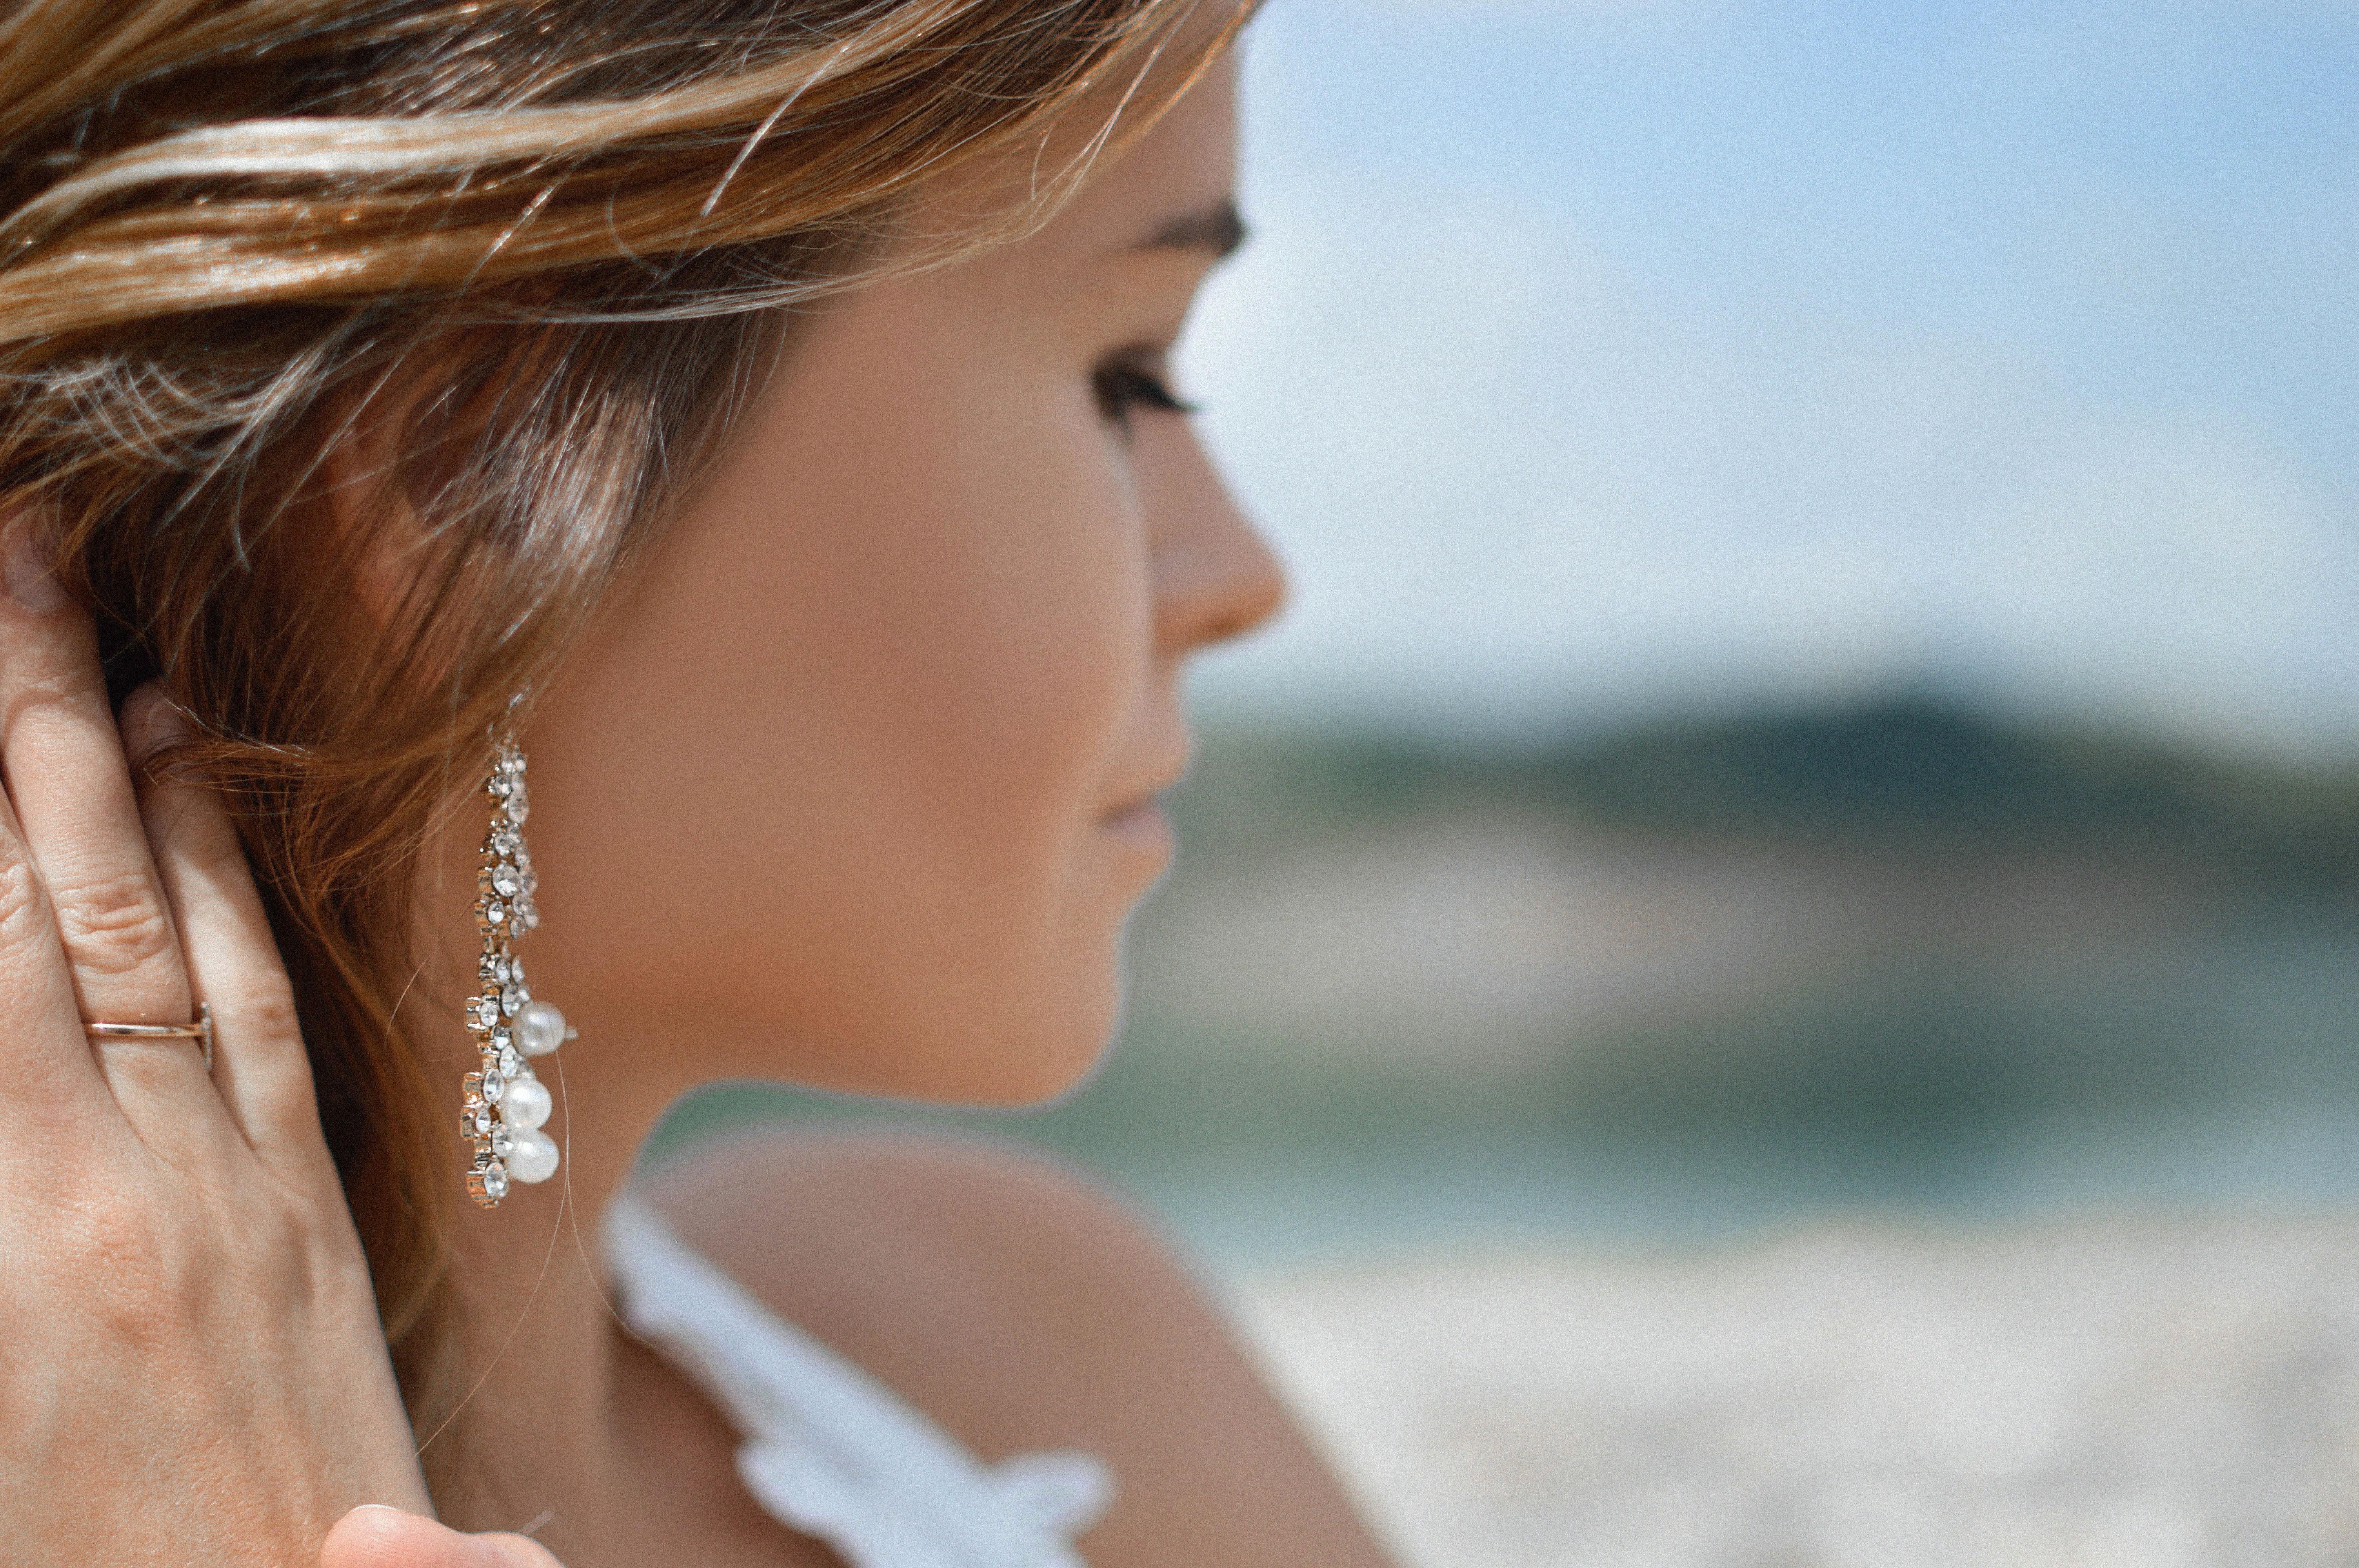 Perly v kombinaci s křišťály dodávají celkové vizáži luxusní a honosný vzhled